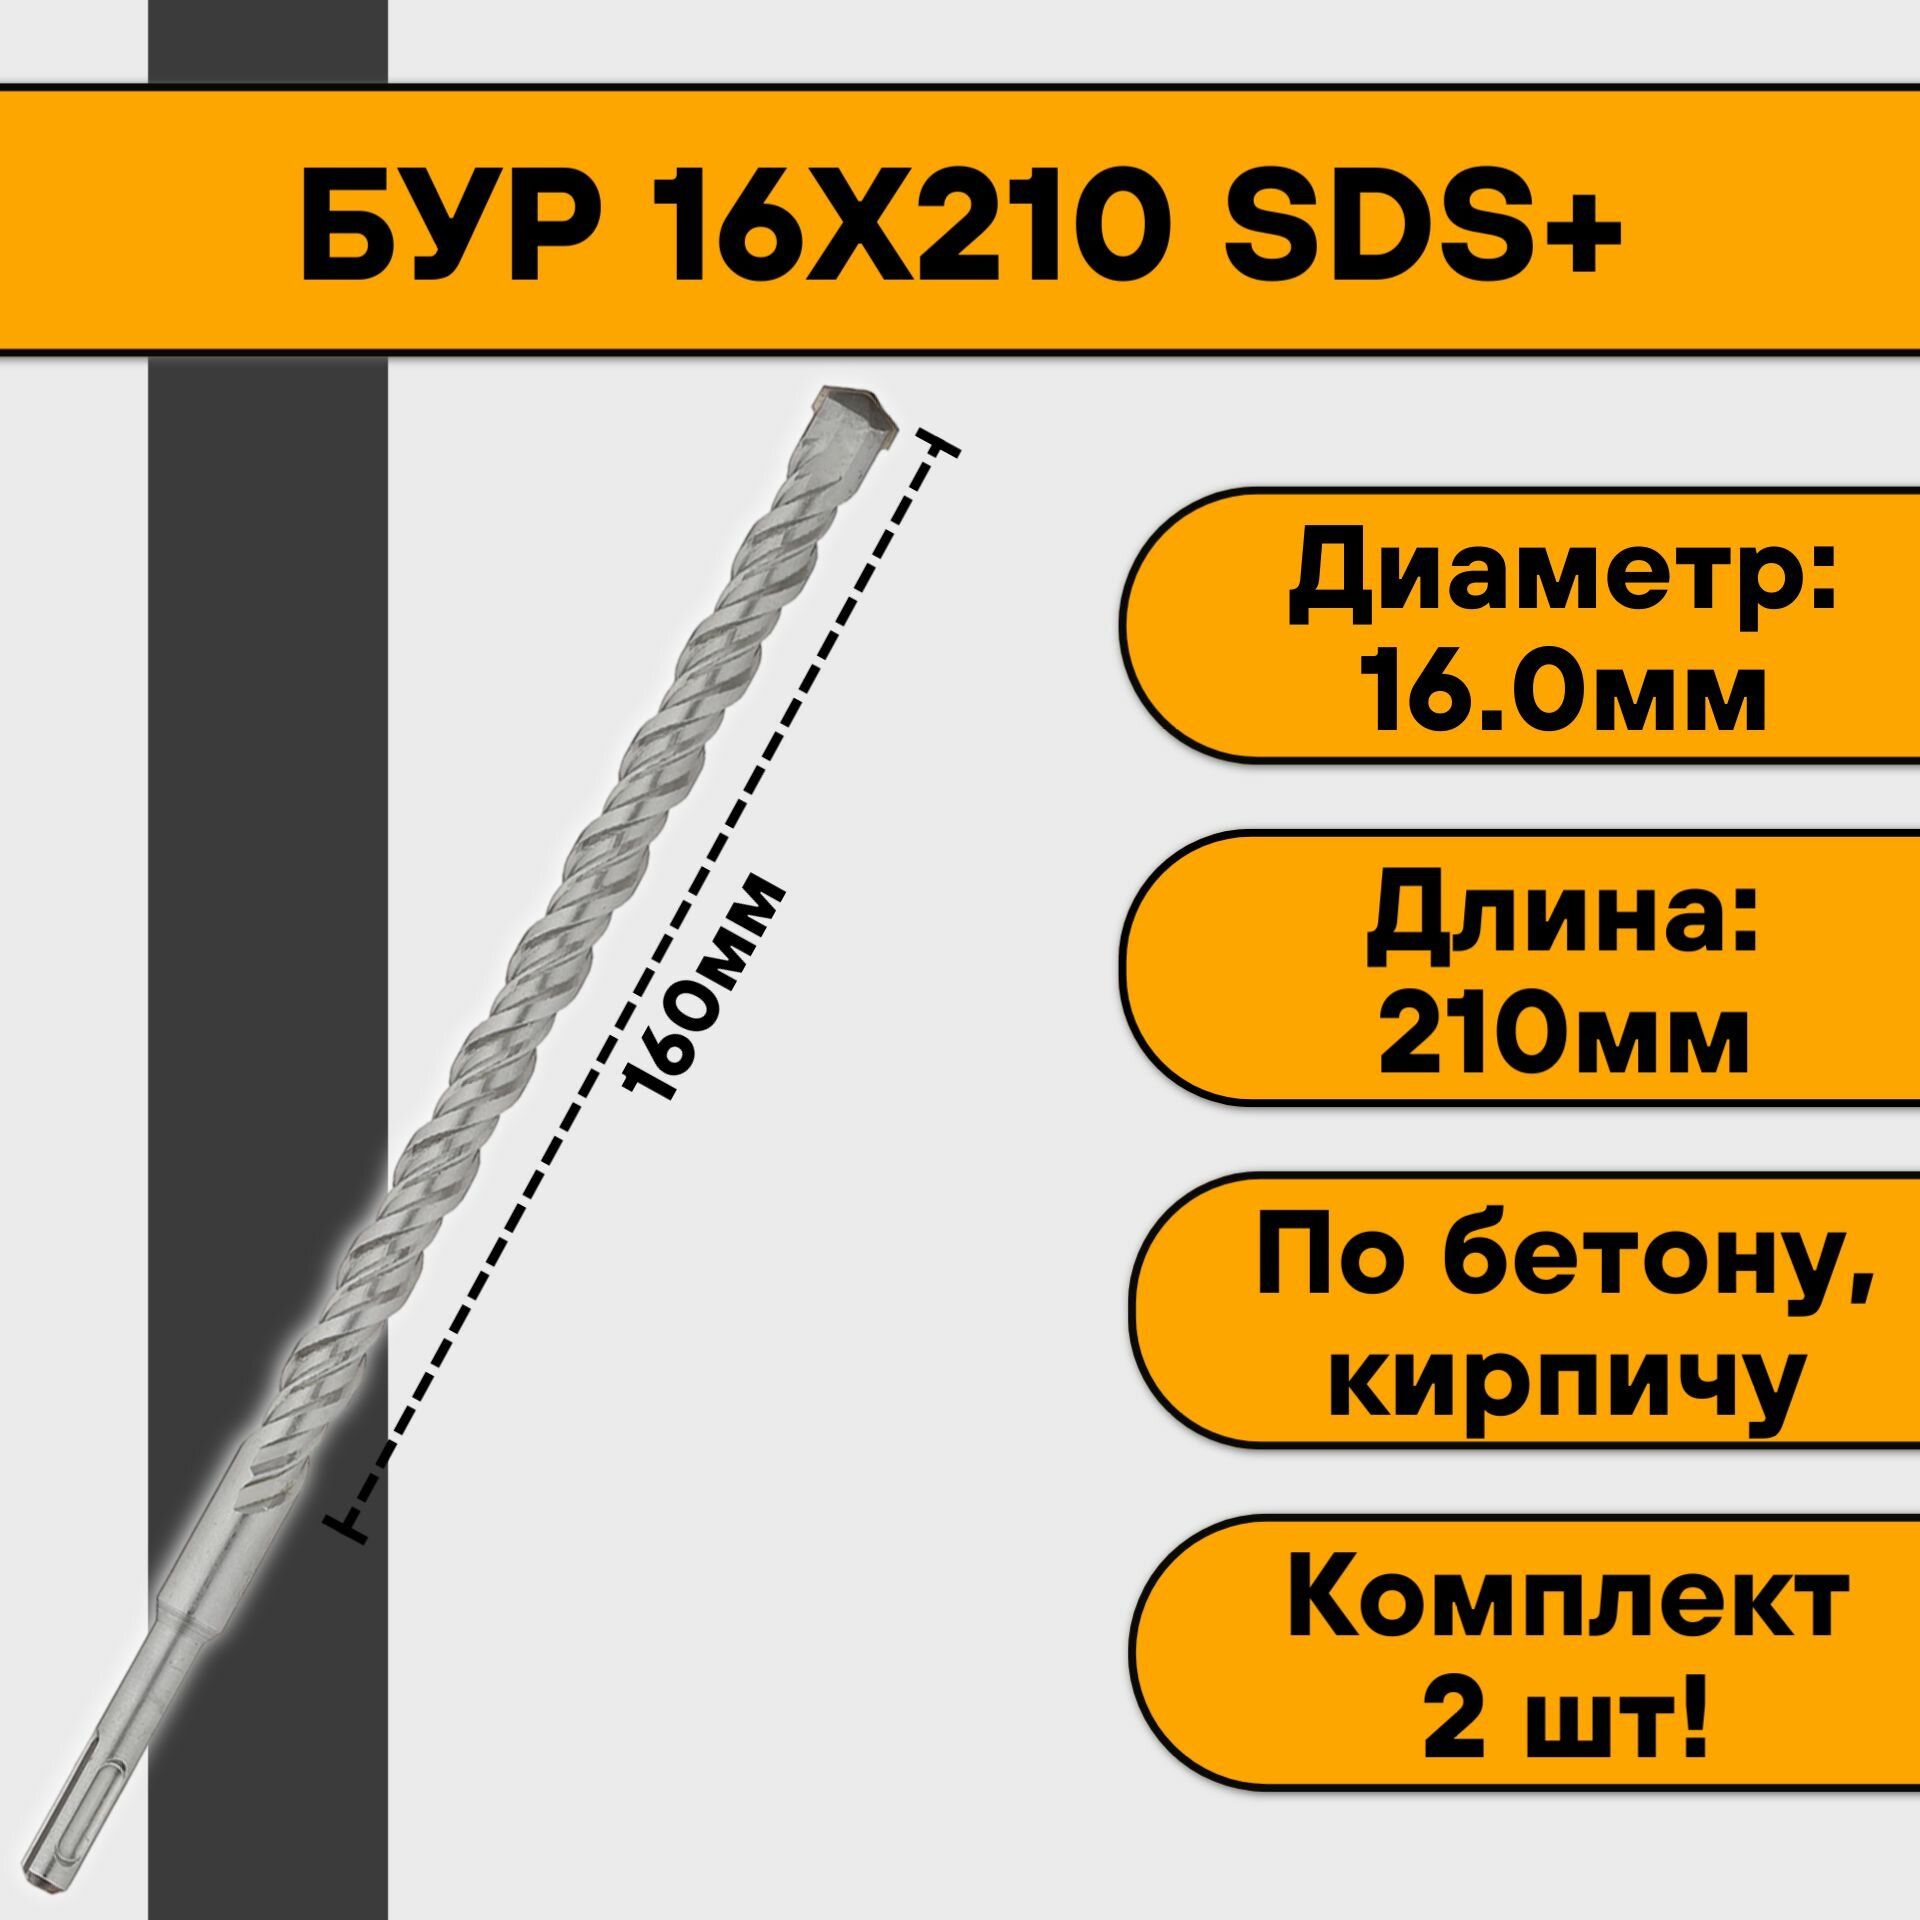 Бур 16х210 SDS+ (2 шт)